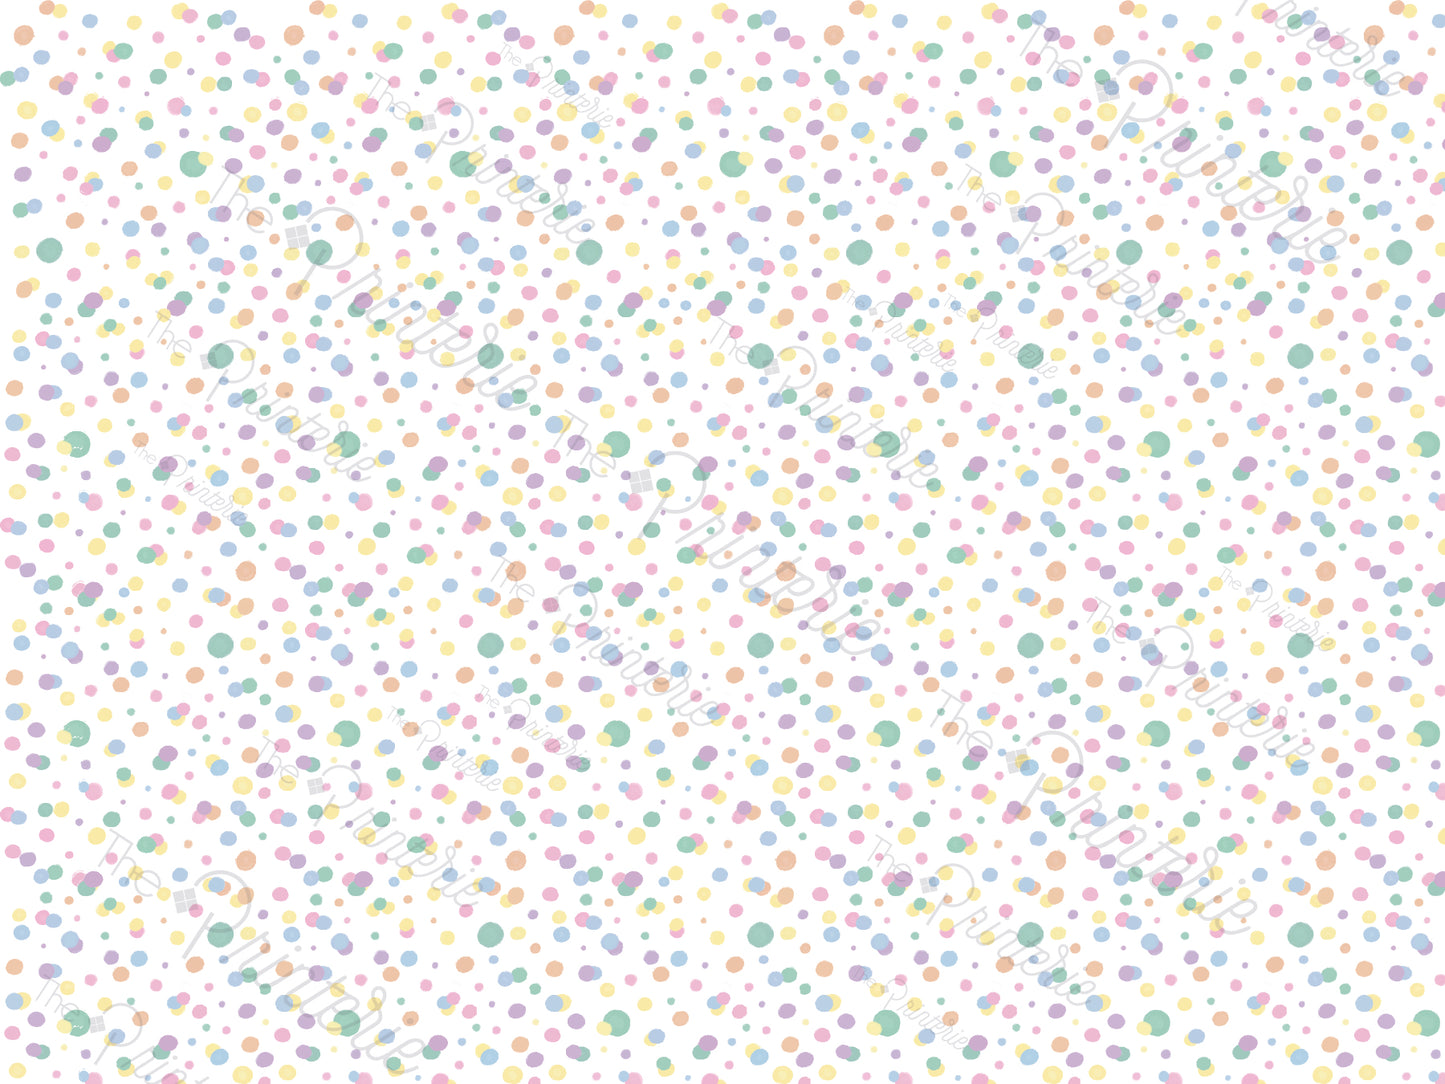 Pastel Polka Dots